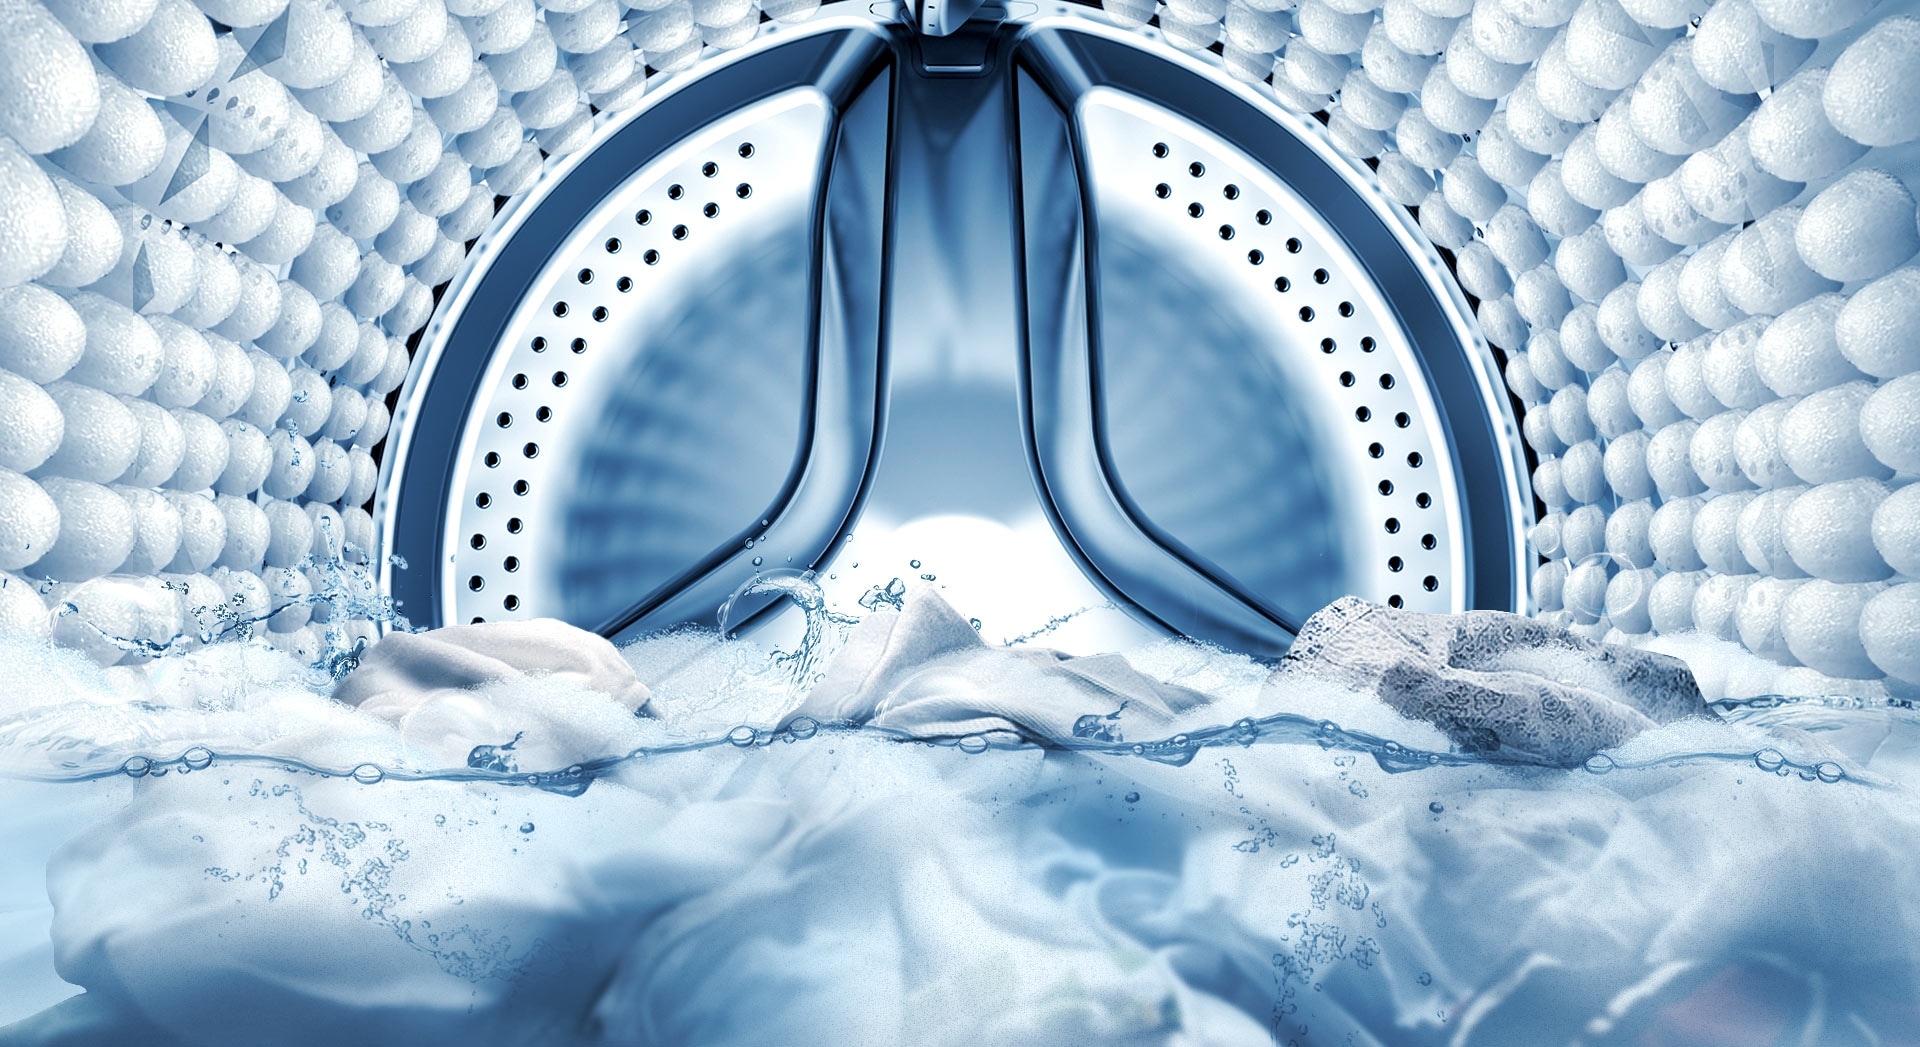 Un'immagine che mostra l'interno del tamburo della macchina, poiché la funzione di immersione bolle rimuove le macchie dai vestiti.